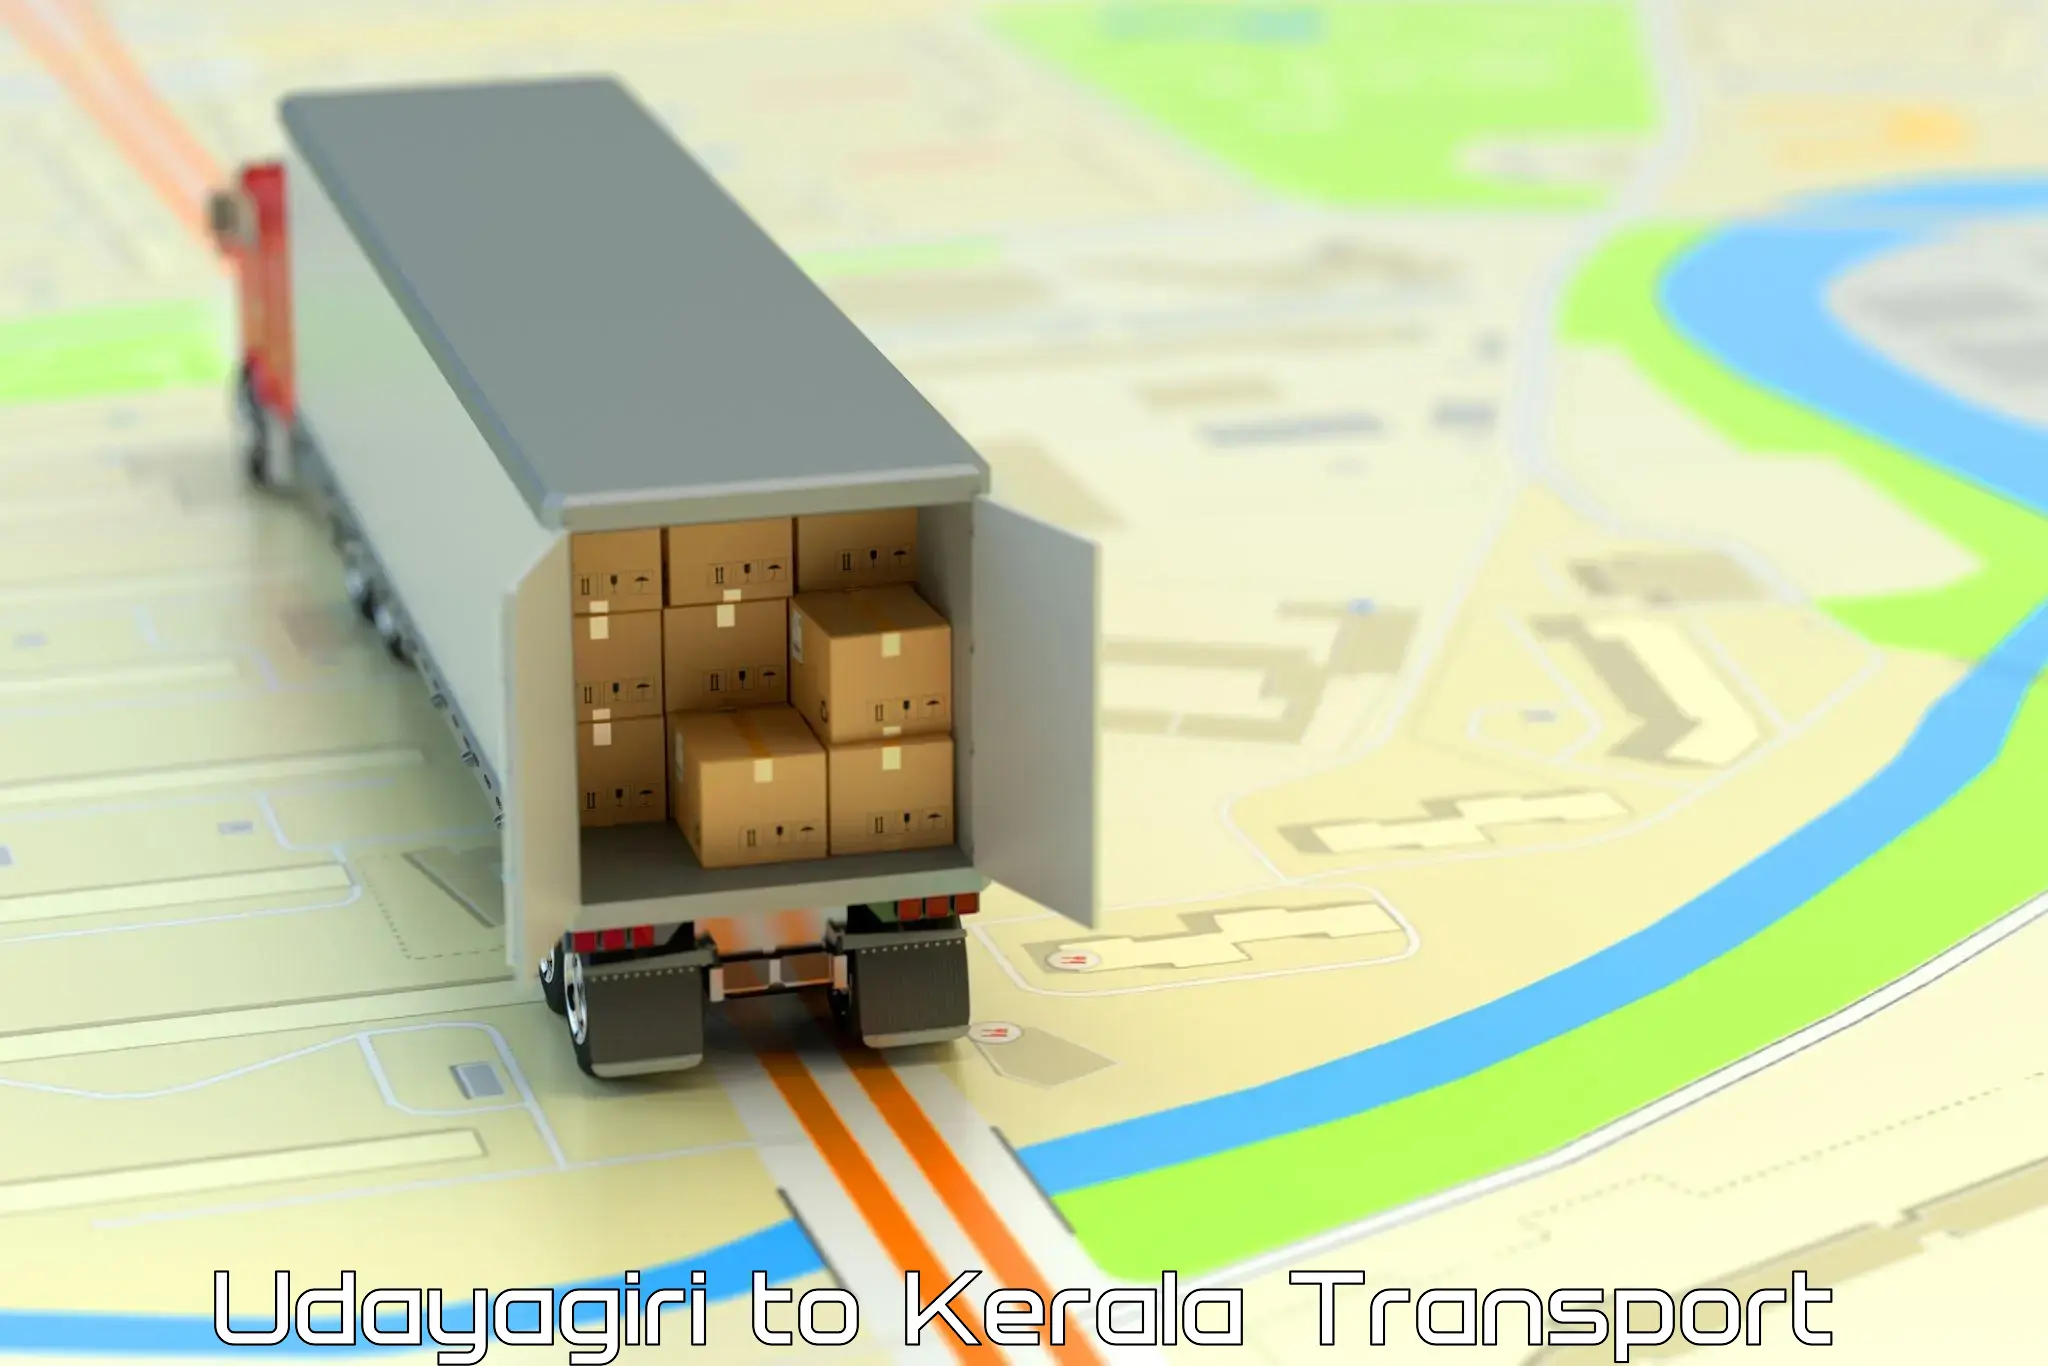 Truck transport companies in India Udayagiri to Panthalam